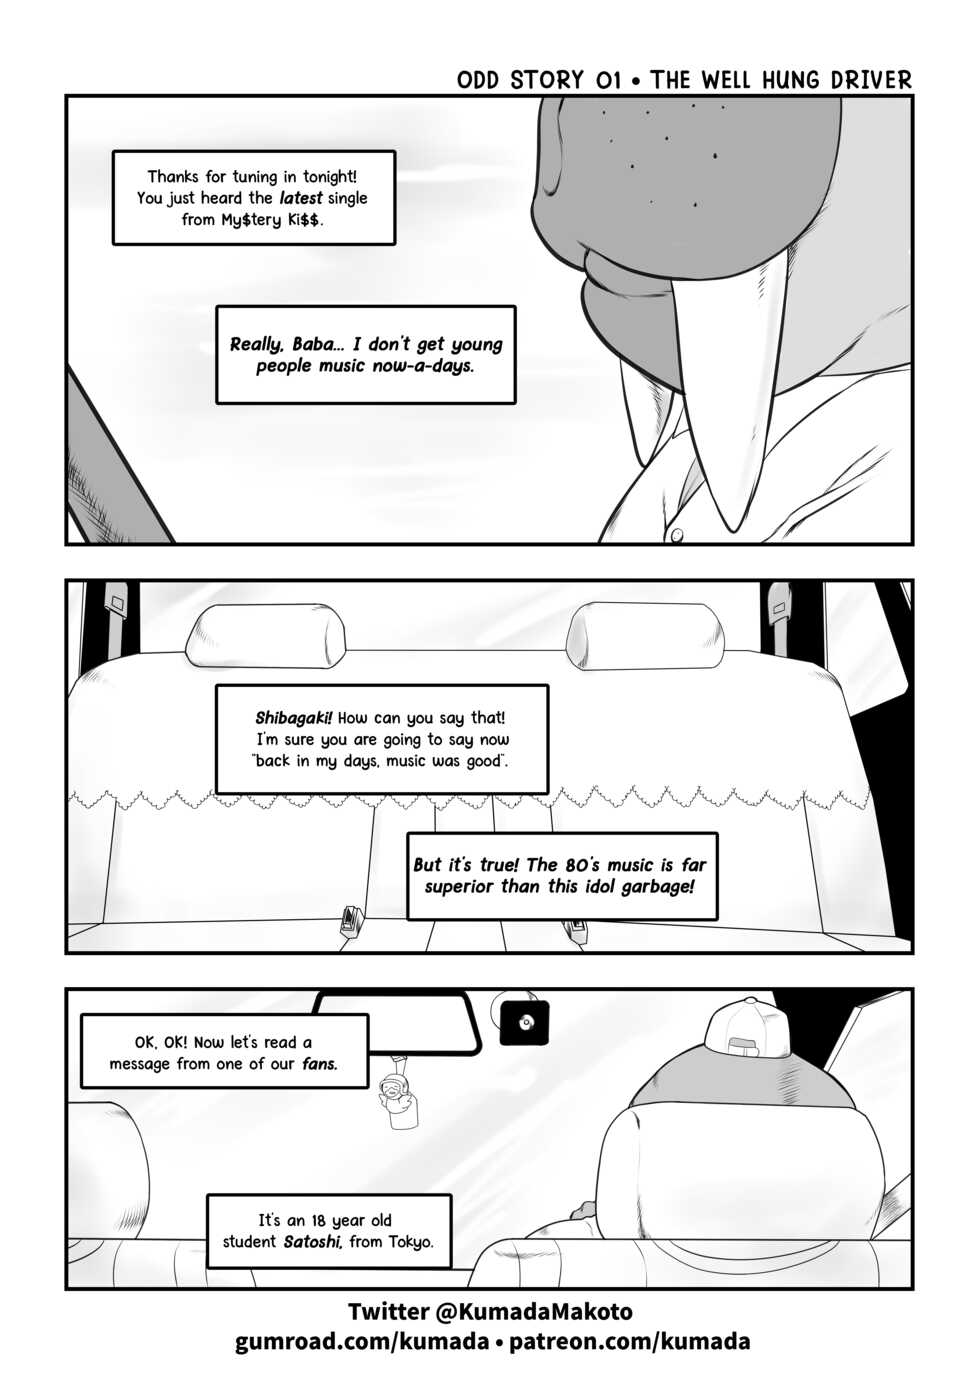 [Kumada Makoto] Odd Story #1 - Page 2